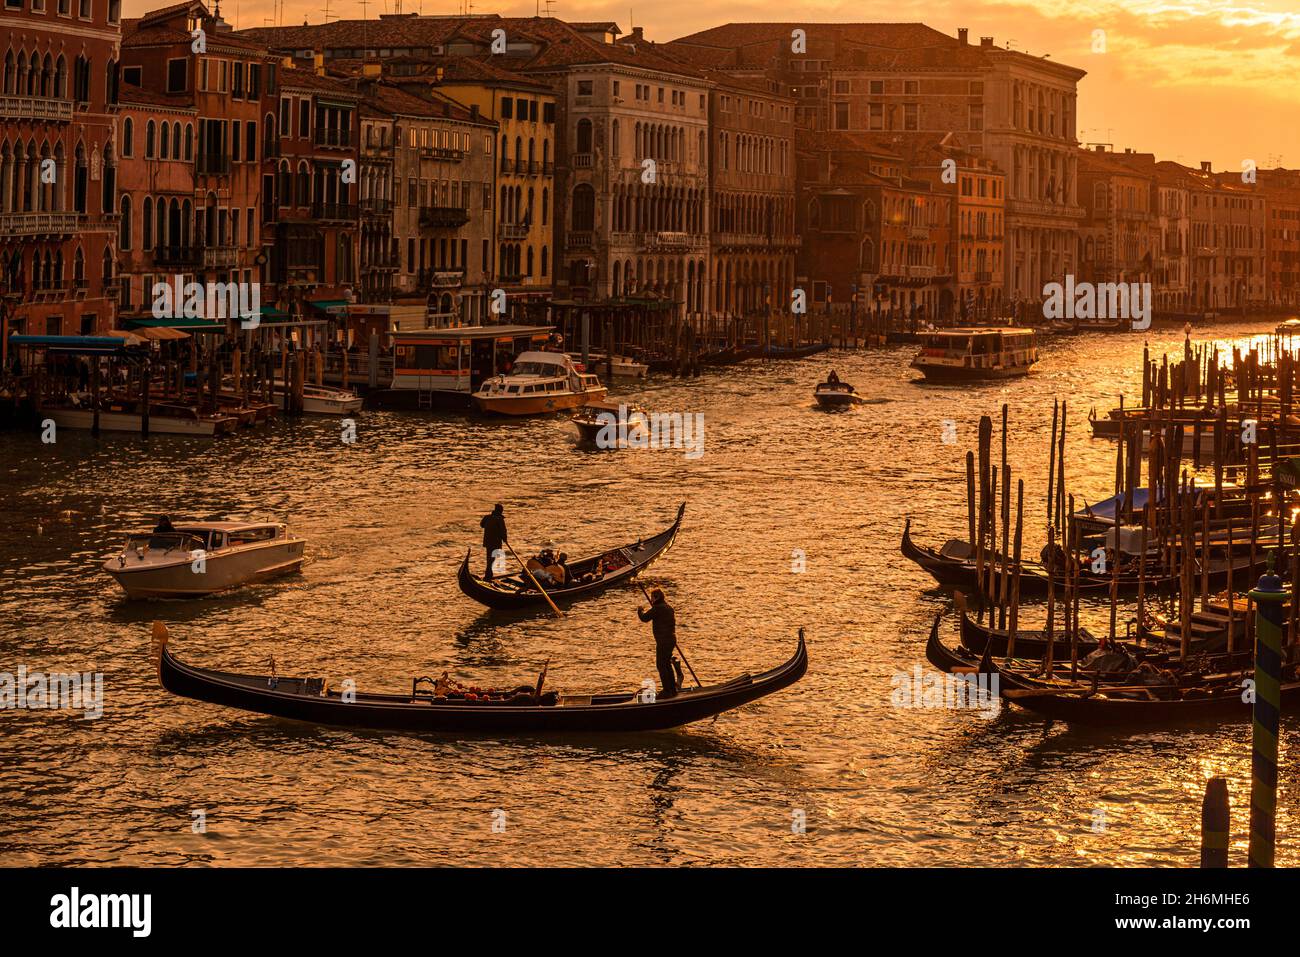 Typisch venezianische Kanäle oder Wasserstraßen, Italien. Stockfoto